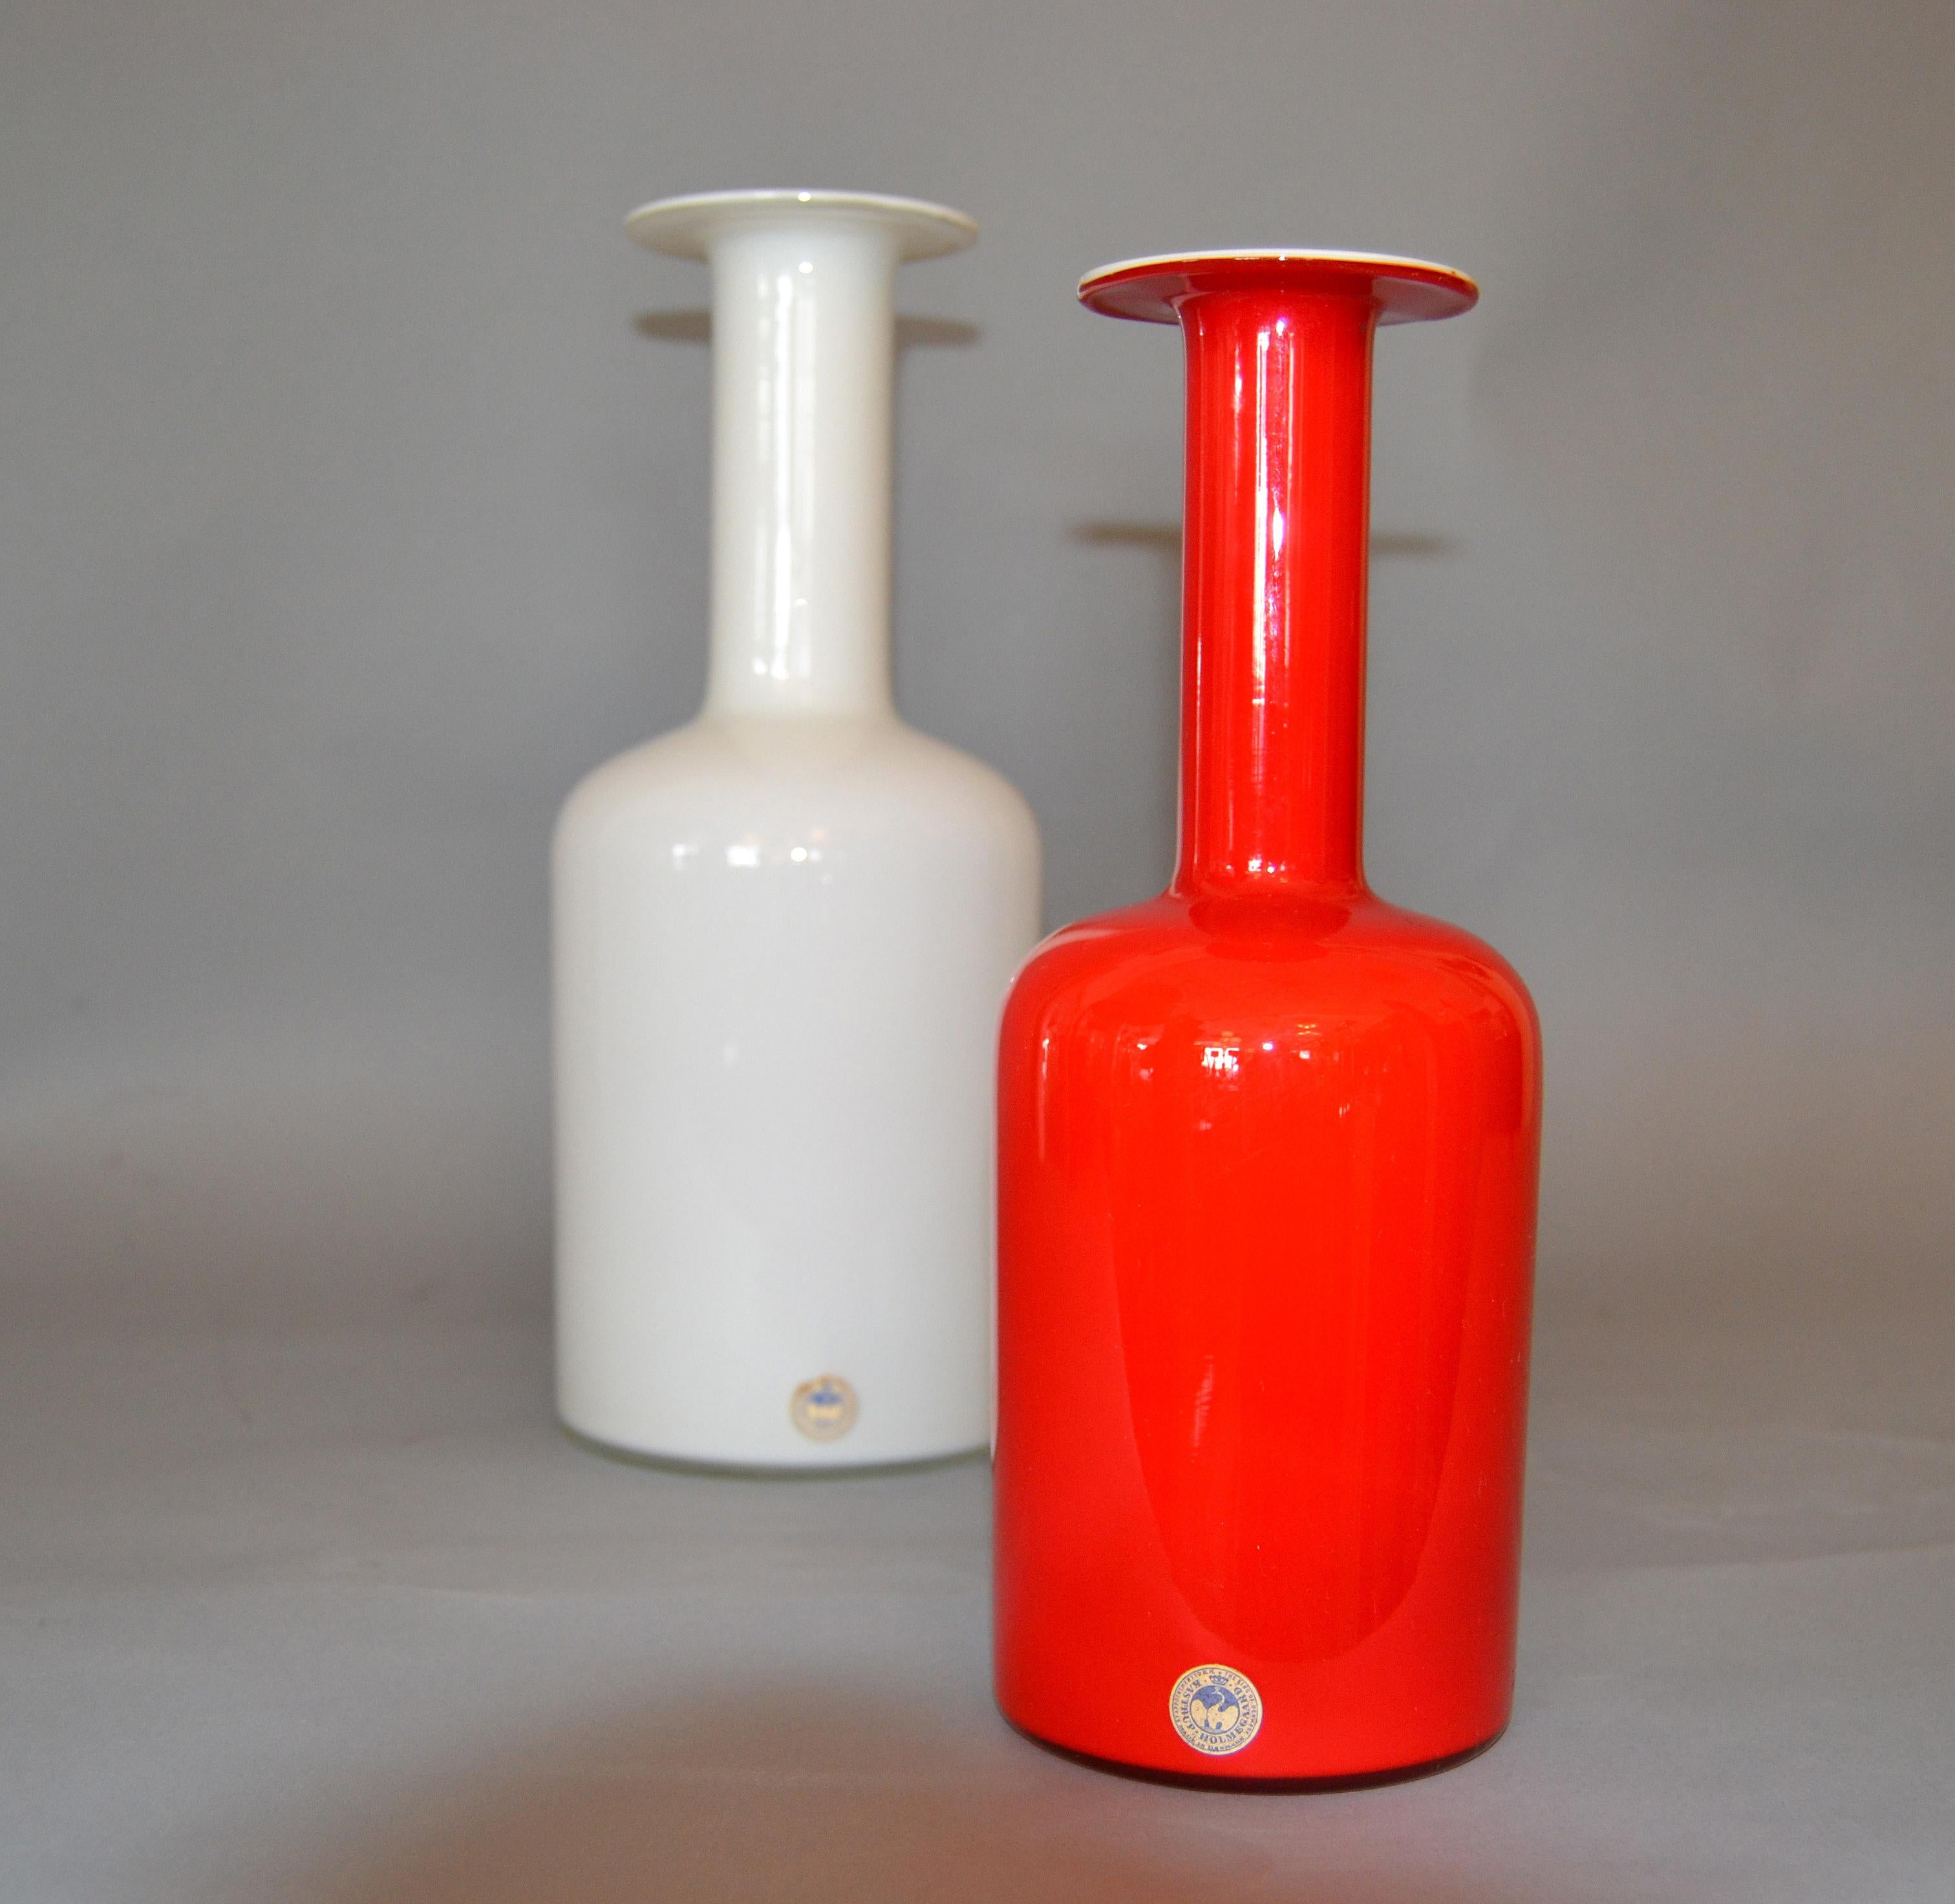 Art Glass Danish Modern Hand Blown Otto Bauer Gulv Vase in Red & Milk Glass by Holmegaard For Sale